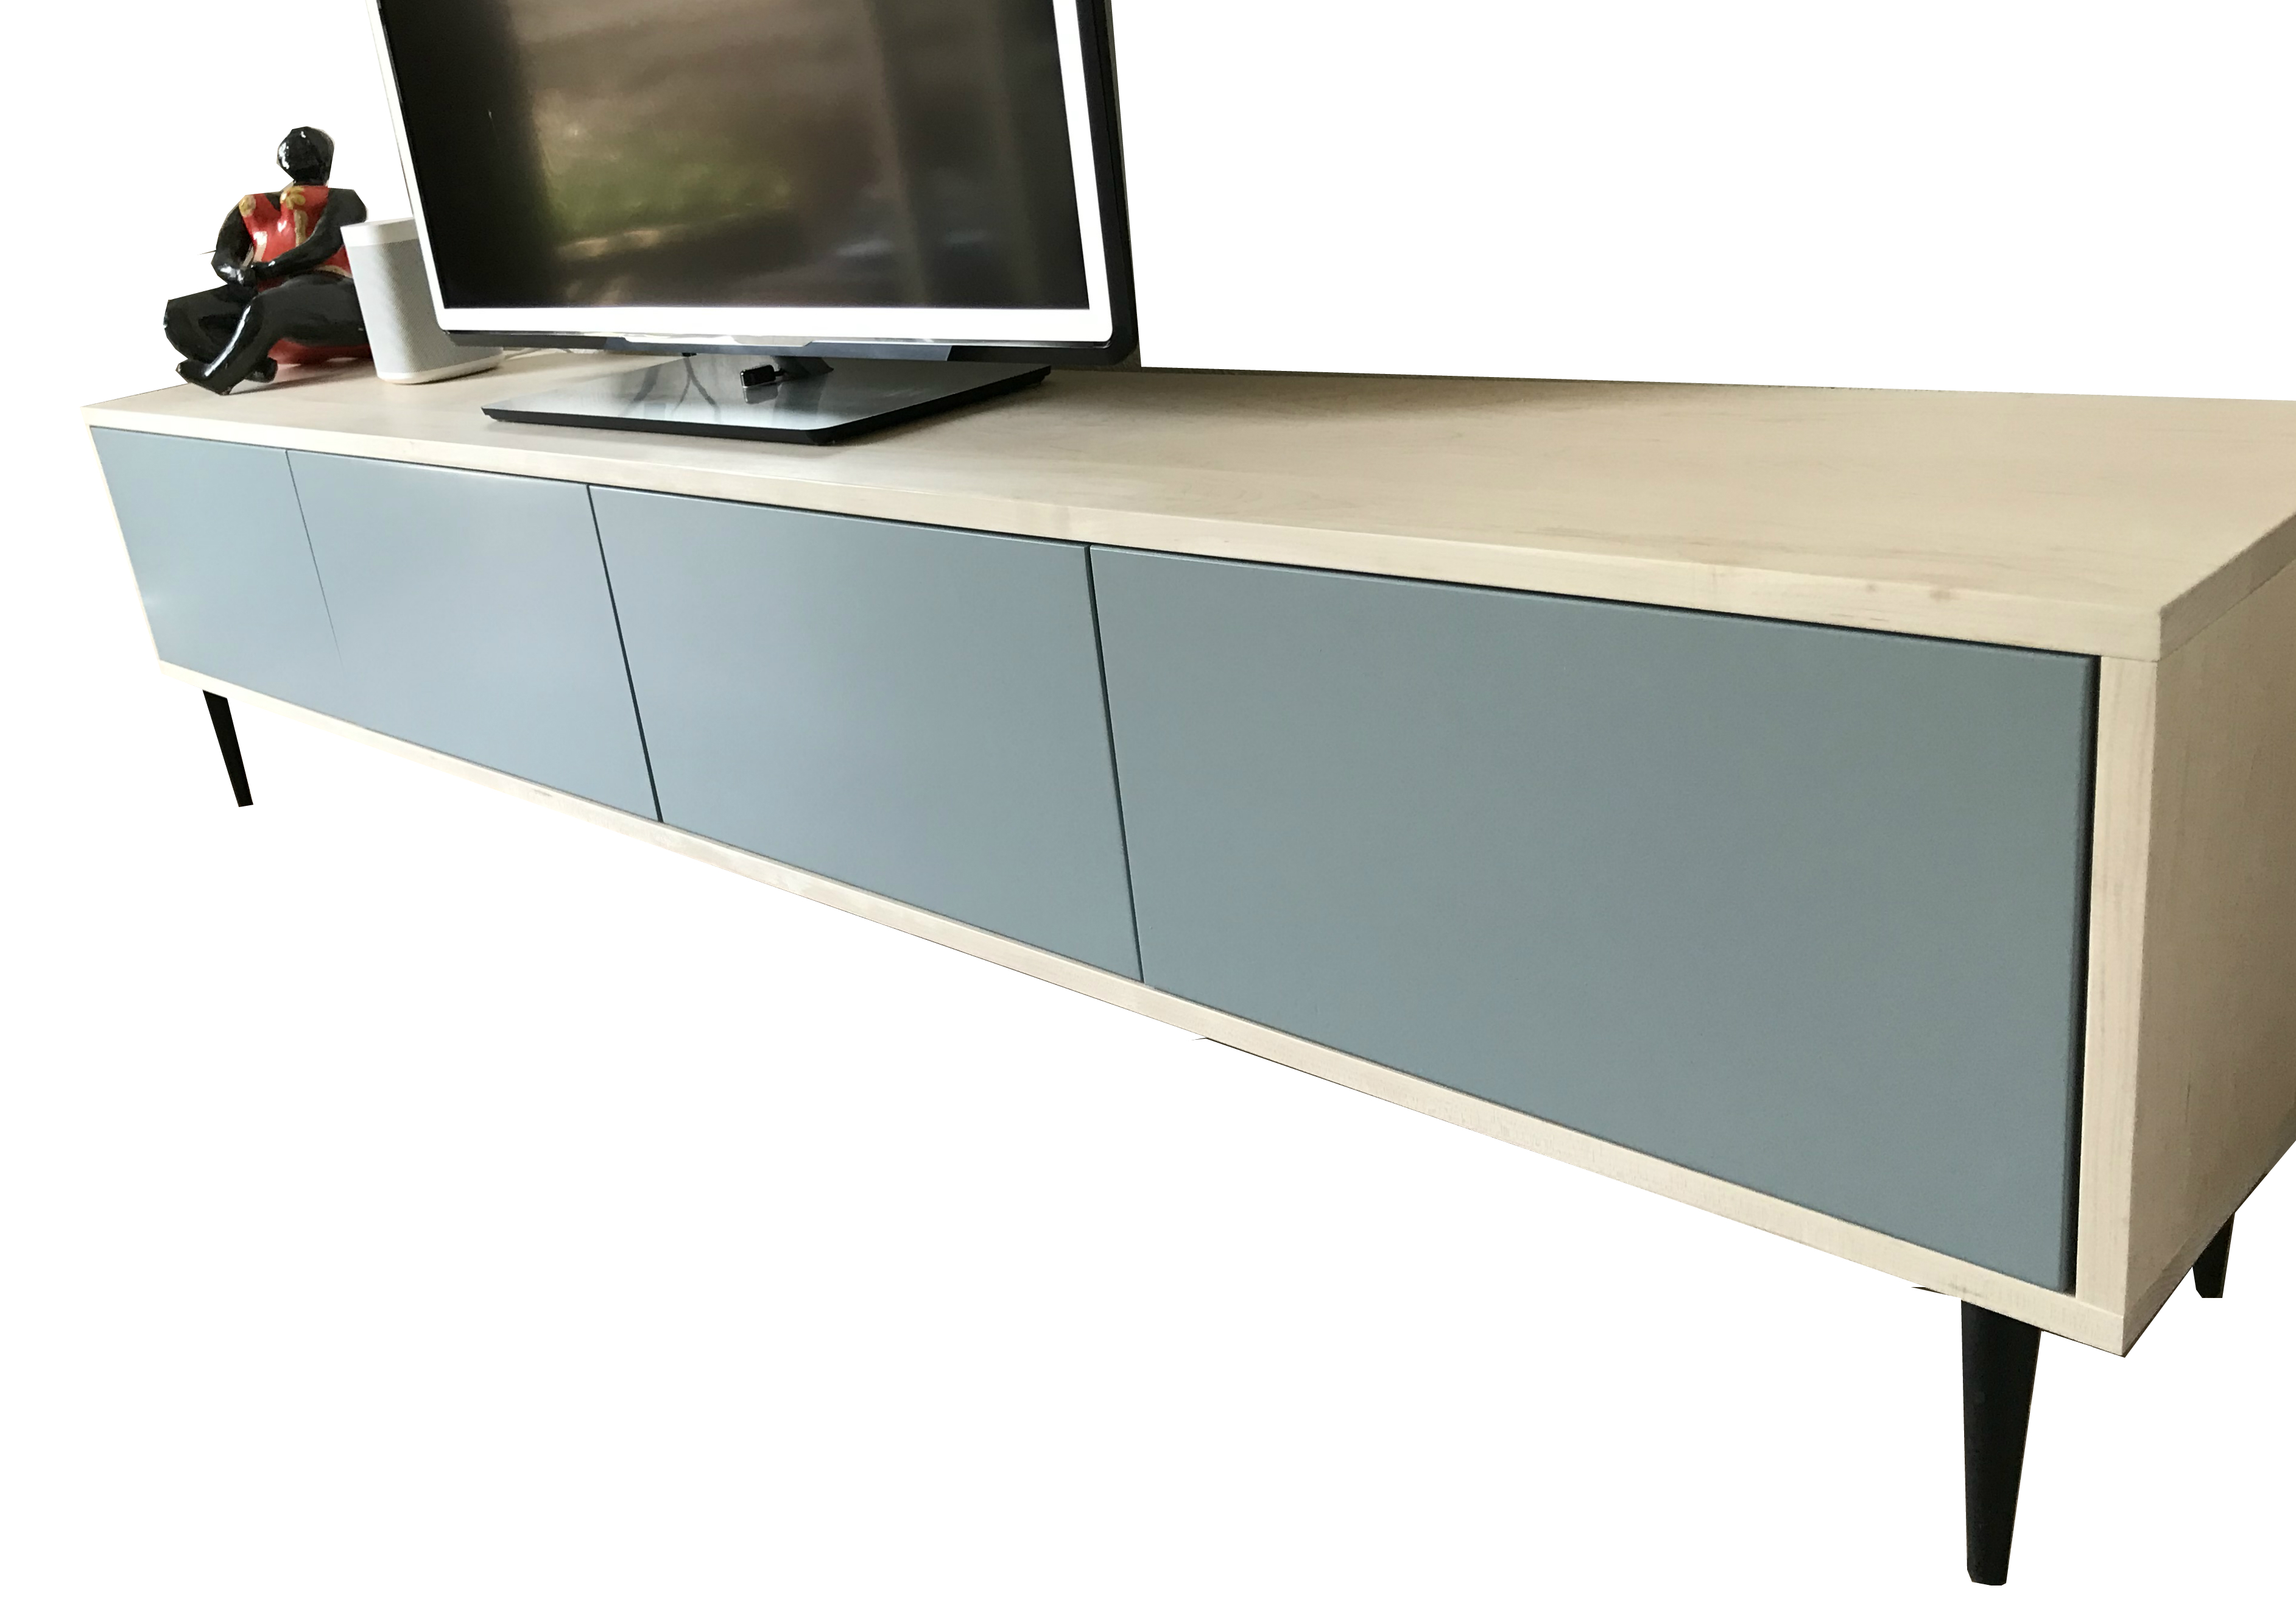 Verwonderend handgemaakt TV-meubel op maat, modern, strak en minimalistisch KJ-97